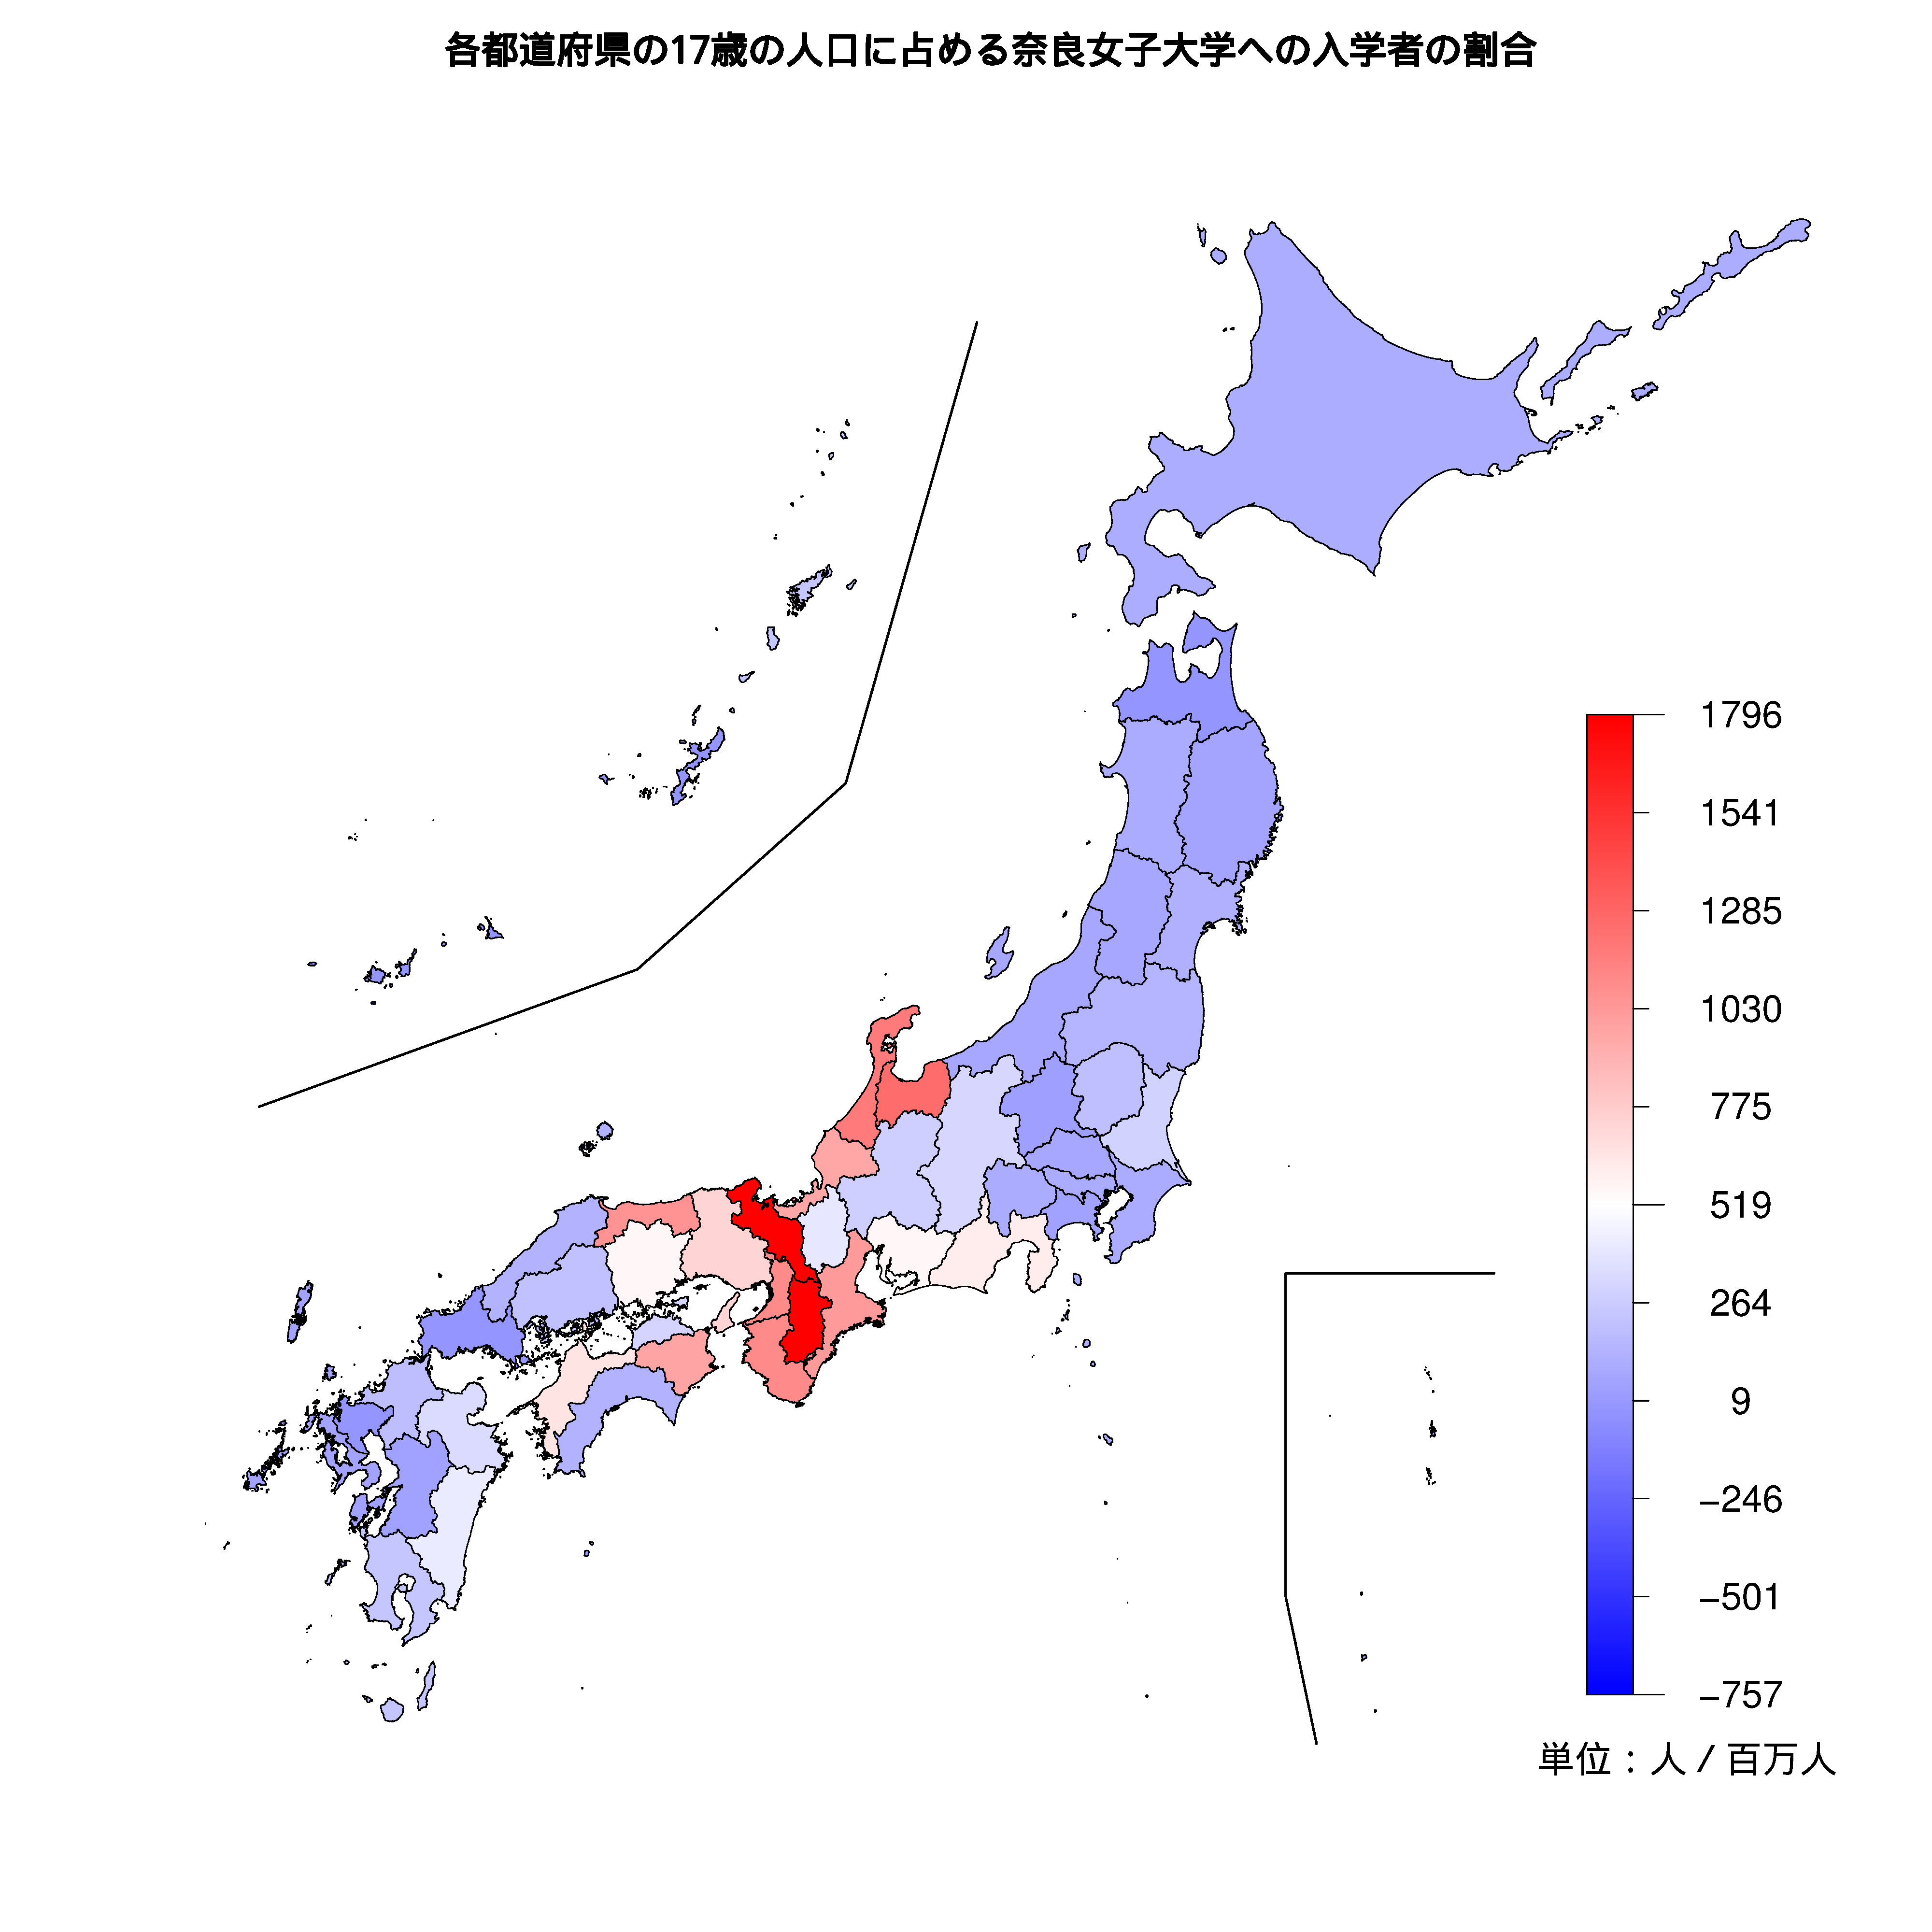 奈良女子大学への入学者が多い都道府県の色分け地図